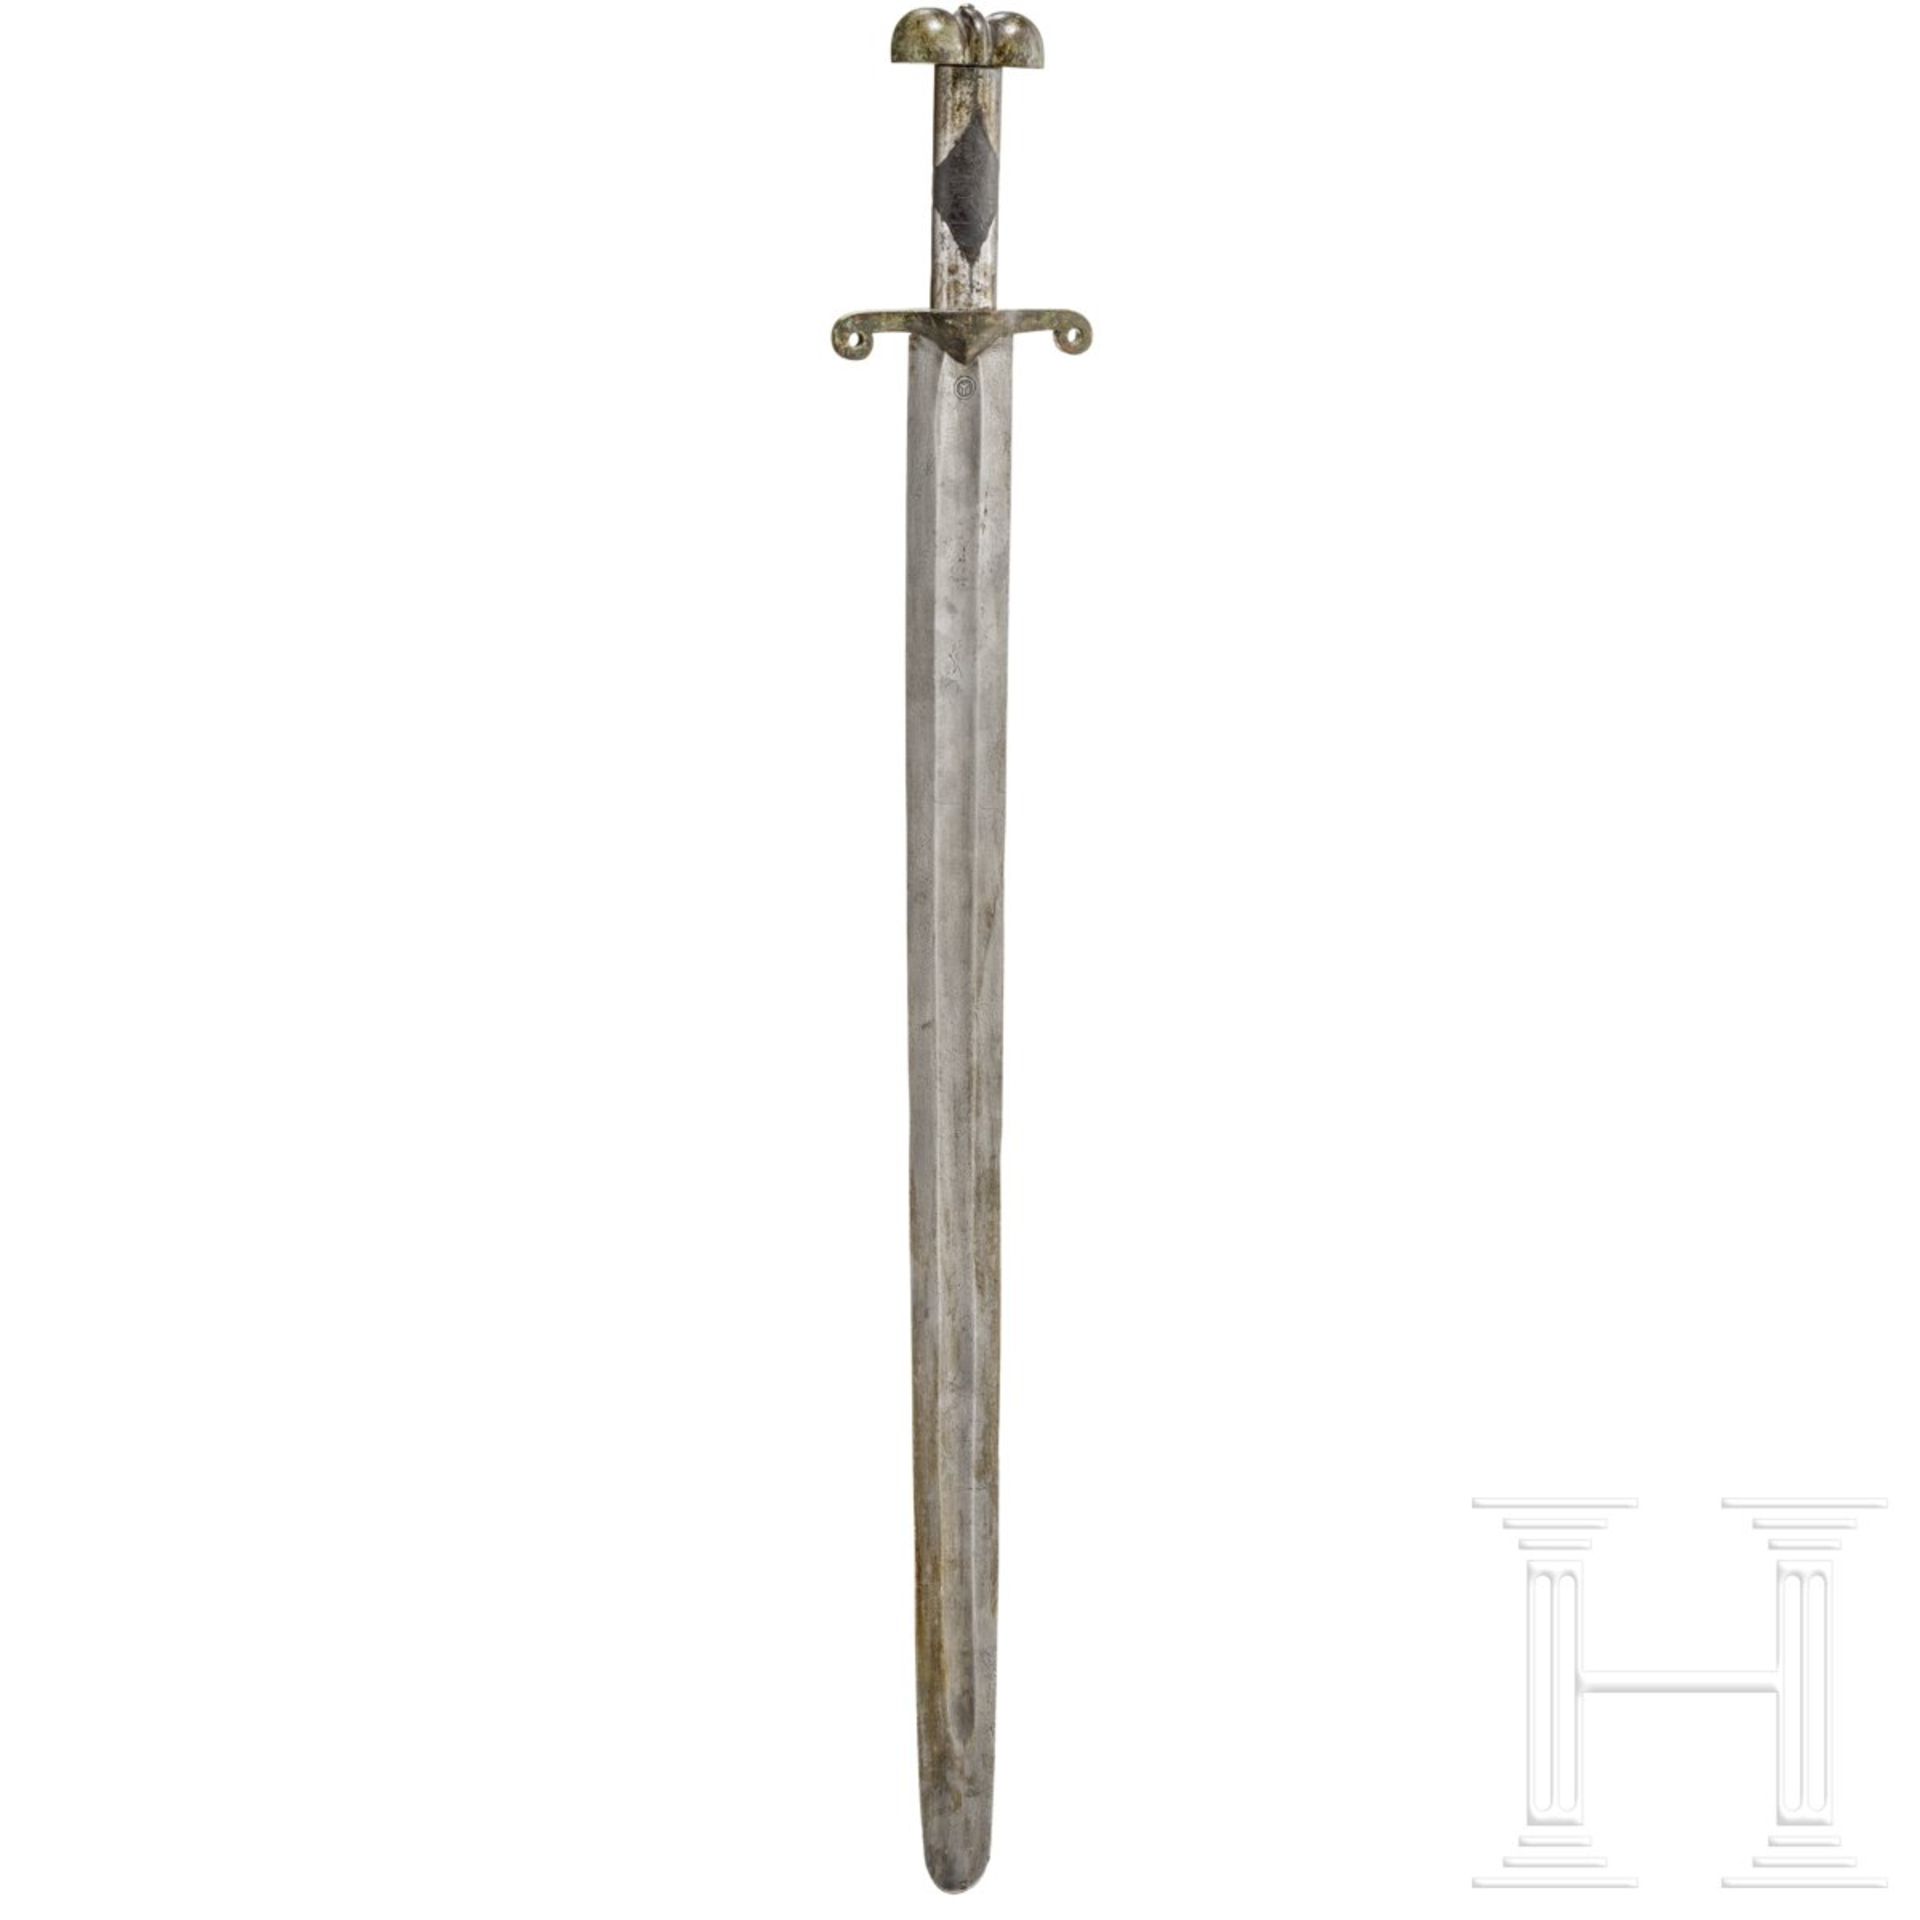 Mamelukisches Schwert, Sammleranfertigung im Stil des frühen 15. Jhdts.Zweischneidige gekehlte